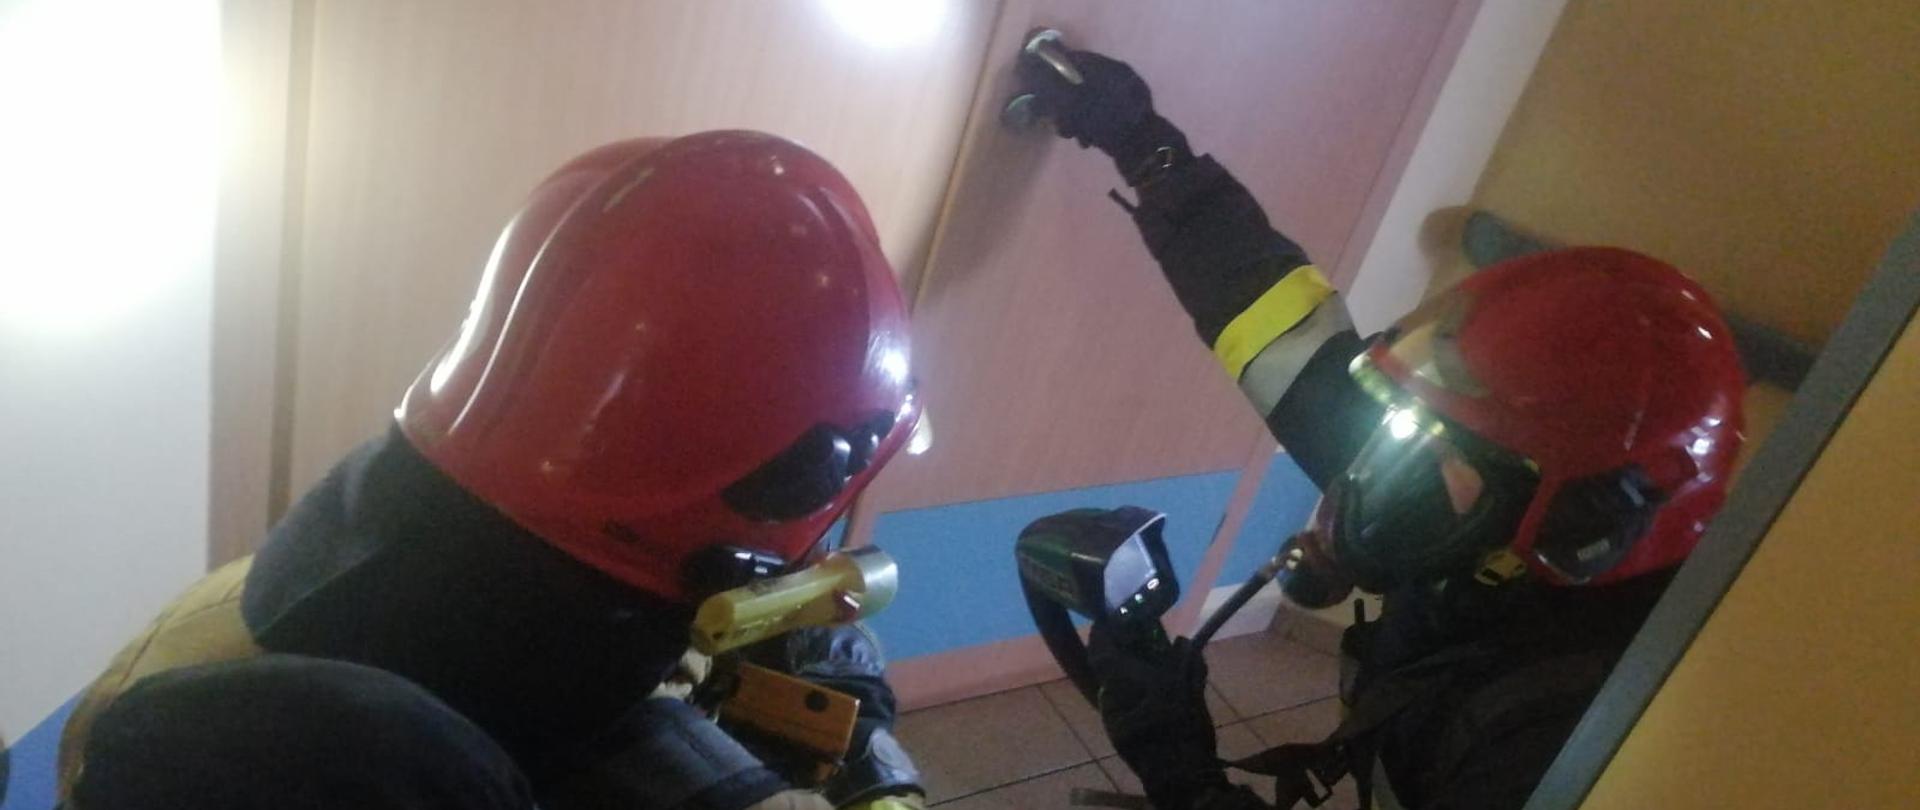 Na zdjęciu widać dwóch ratowników PSP w ubraniach specjalnych, aparatach oddechowych oraz hełmach z kamerą termowizyjną przed wejściem do pomieszczenia w którym jest pożar.